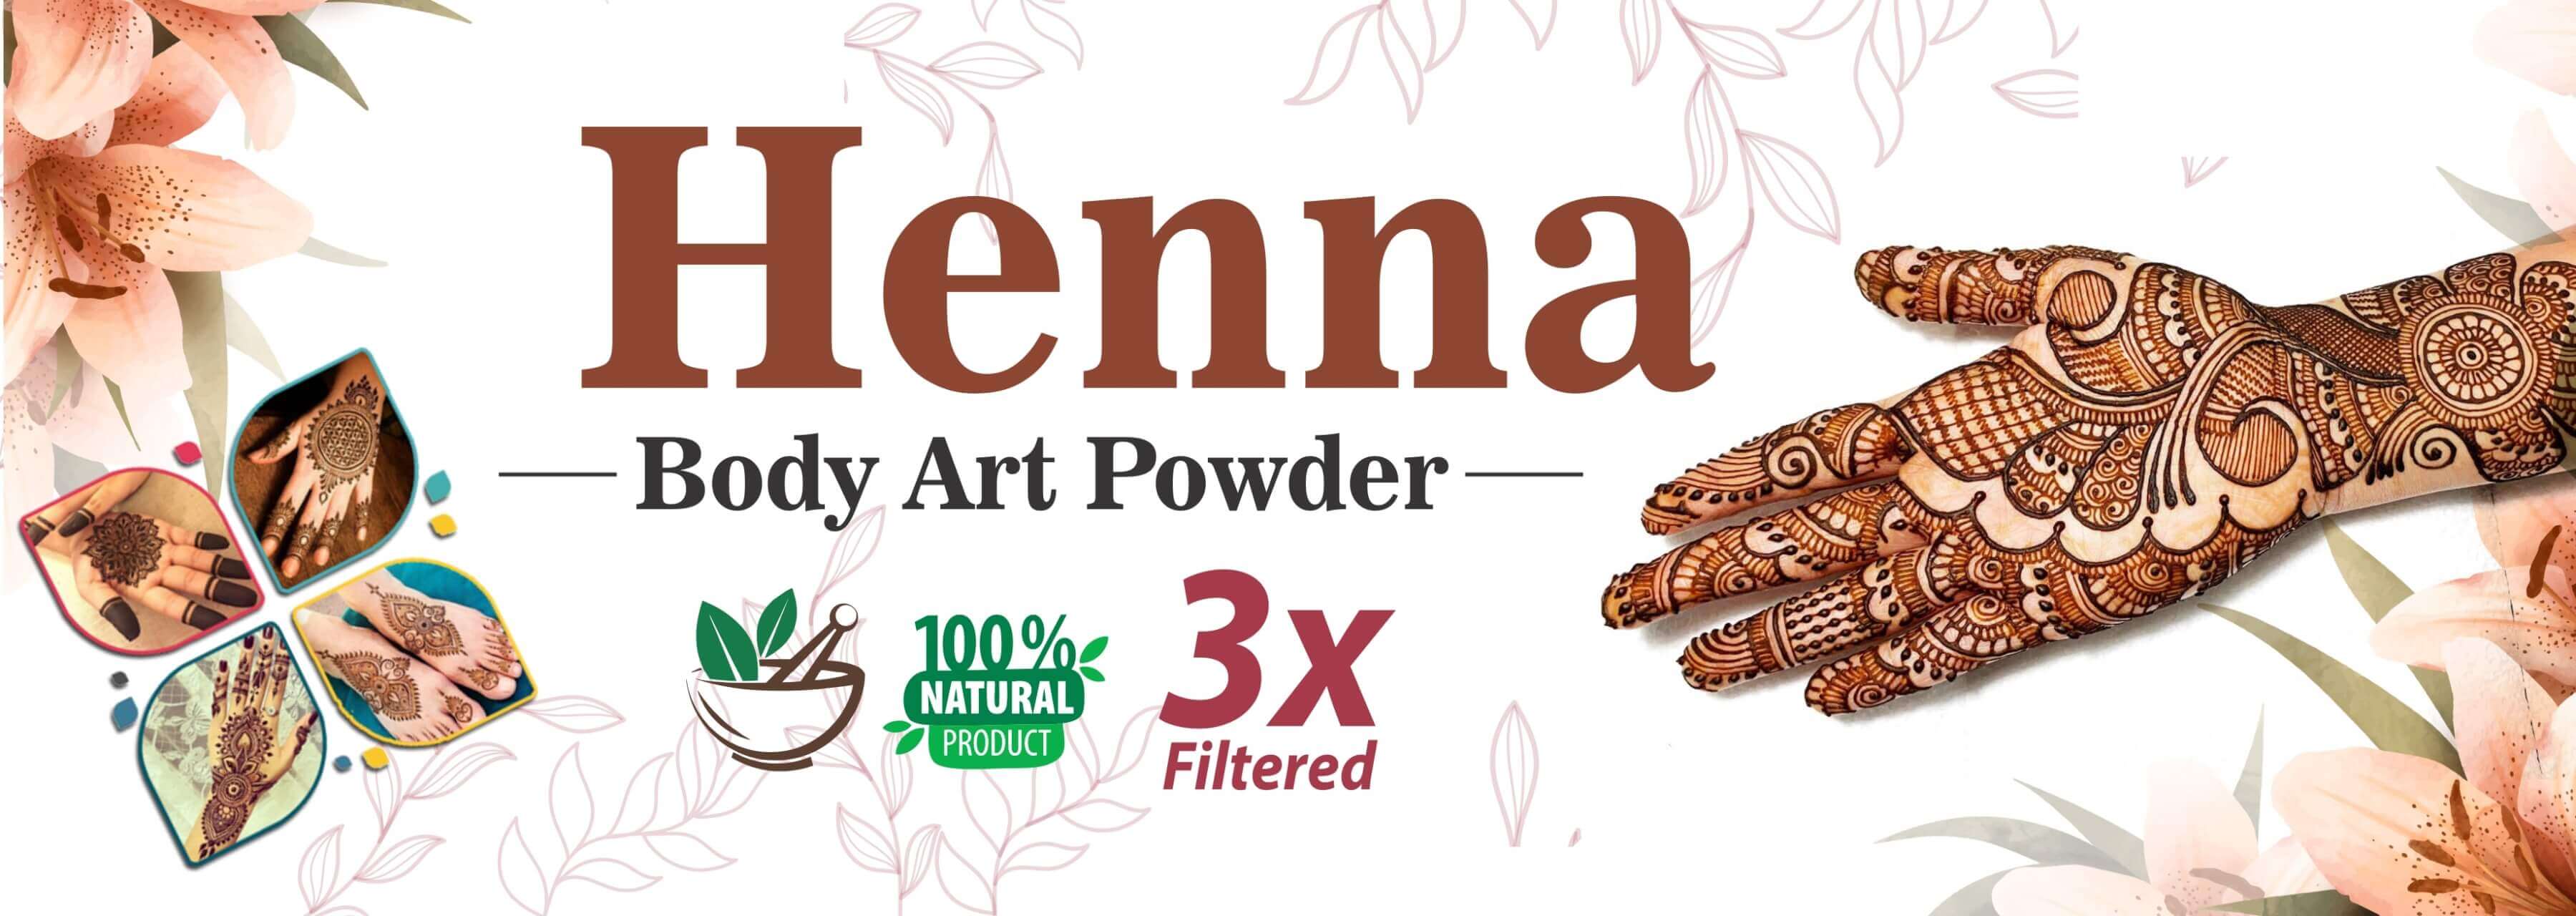 Henna Body Art Powder Manufacturer in India